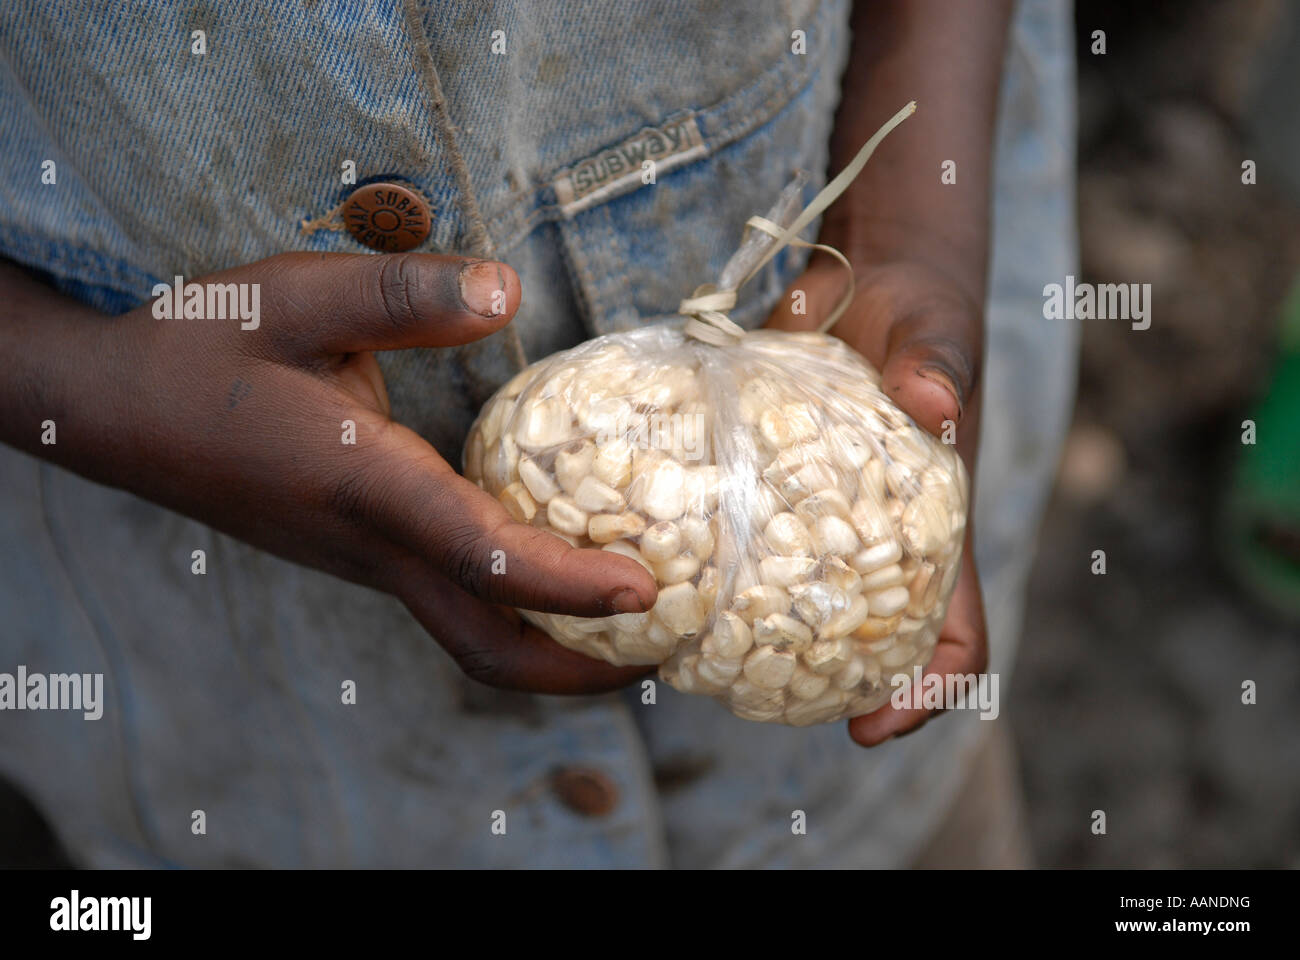 Il giovane ragazzo tiene un fascio di cereali nella provincia del Nord Kivu, nella Repubblica Democratica del Congo, in Africa Foto Stock